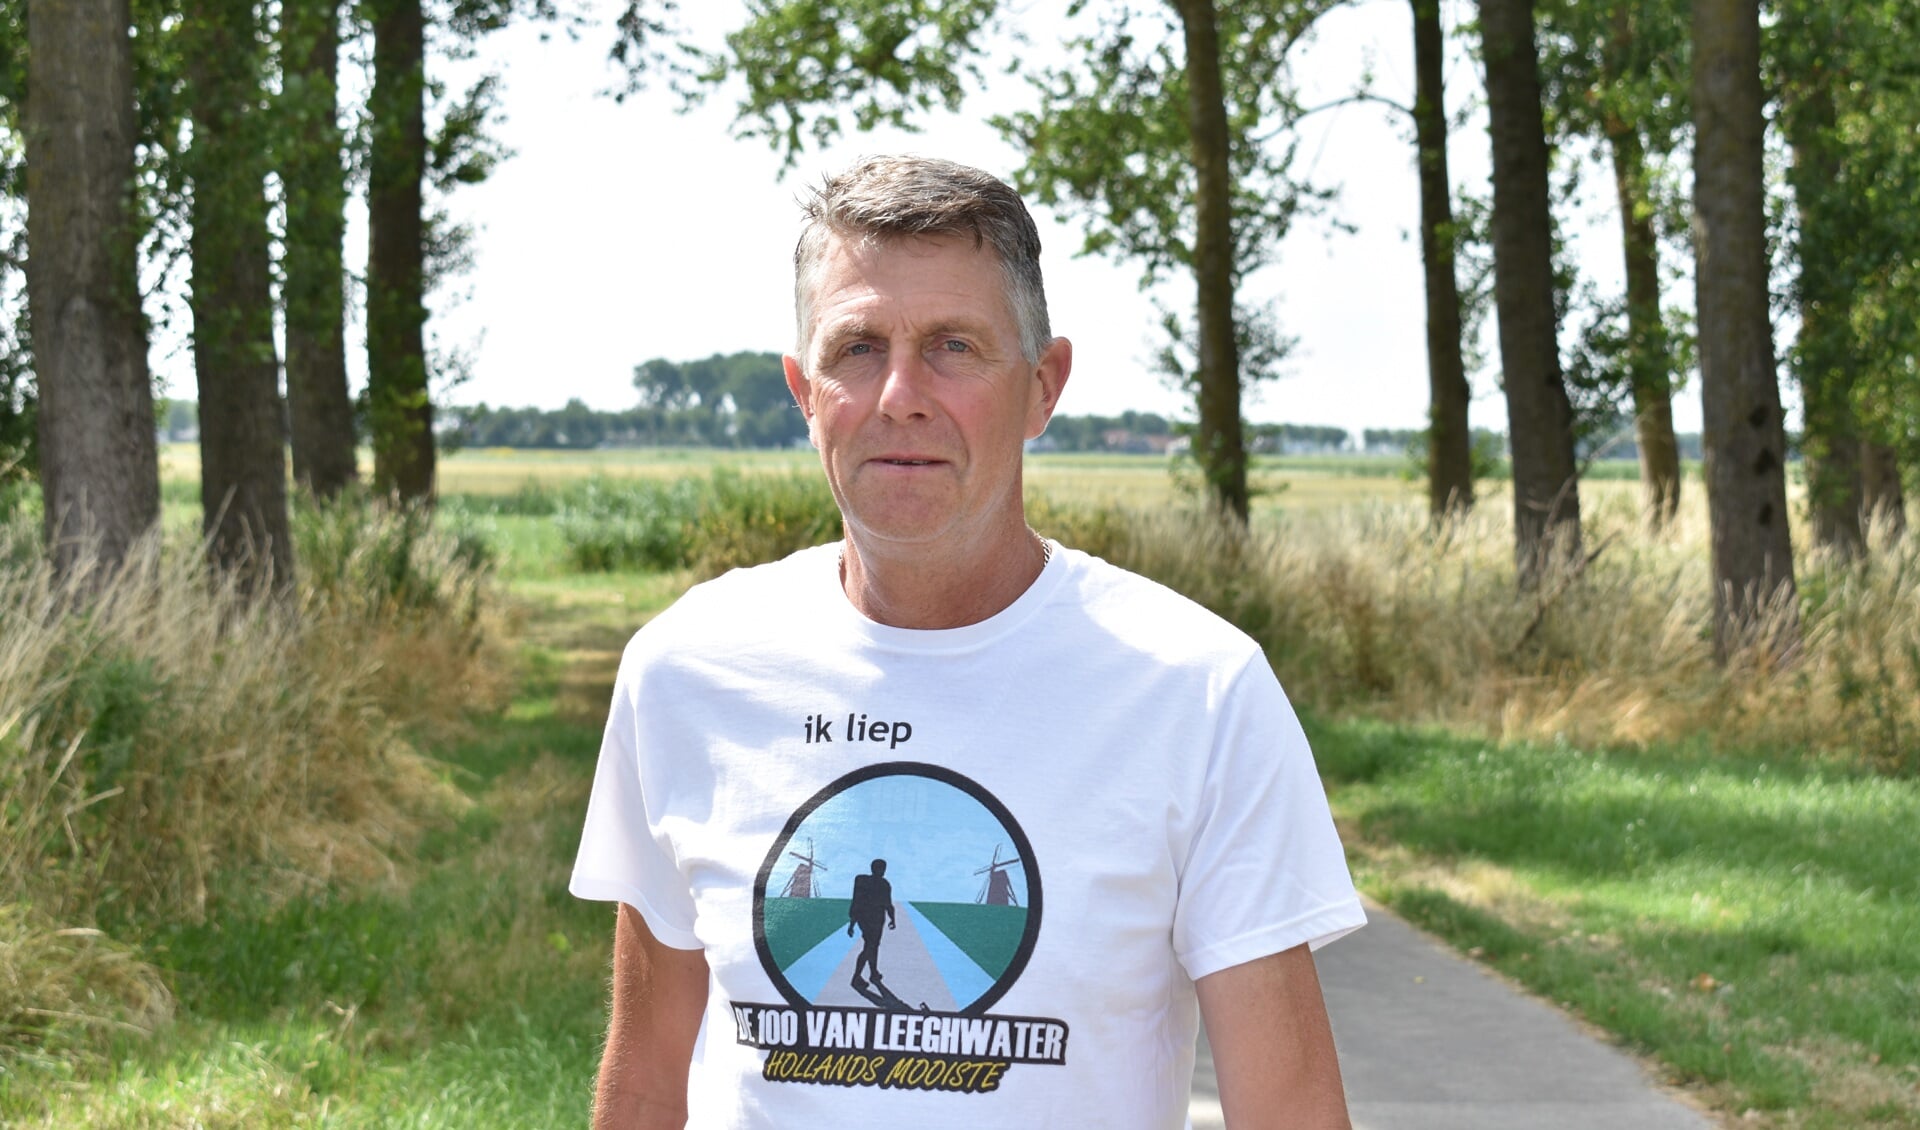 Dirk-Jan wandelde meerdere tochten van 100 kilometer en heeft alweer zin in de 100 van Leeghwater! (Foto: Daan Ruijter/Rodi Media)